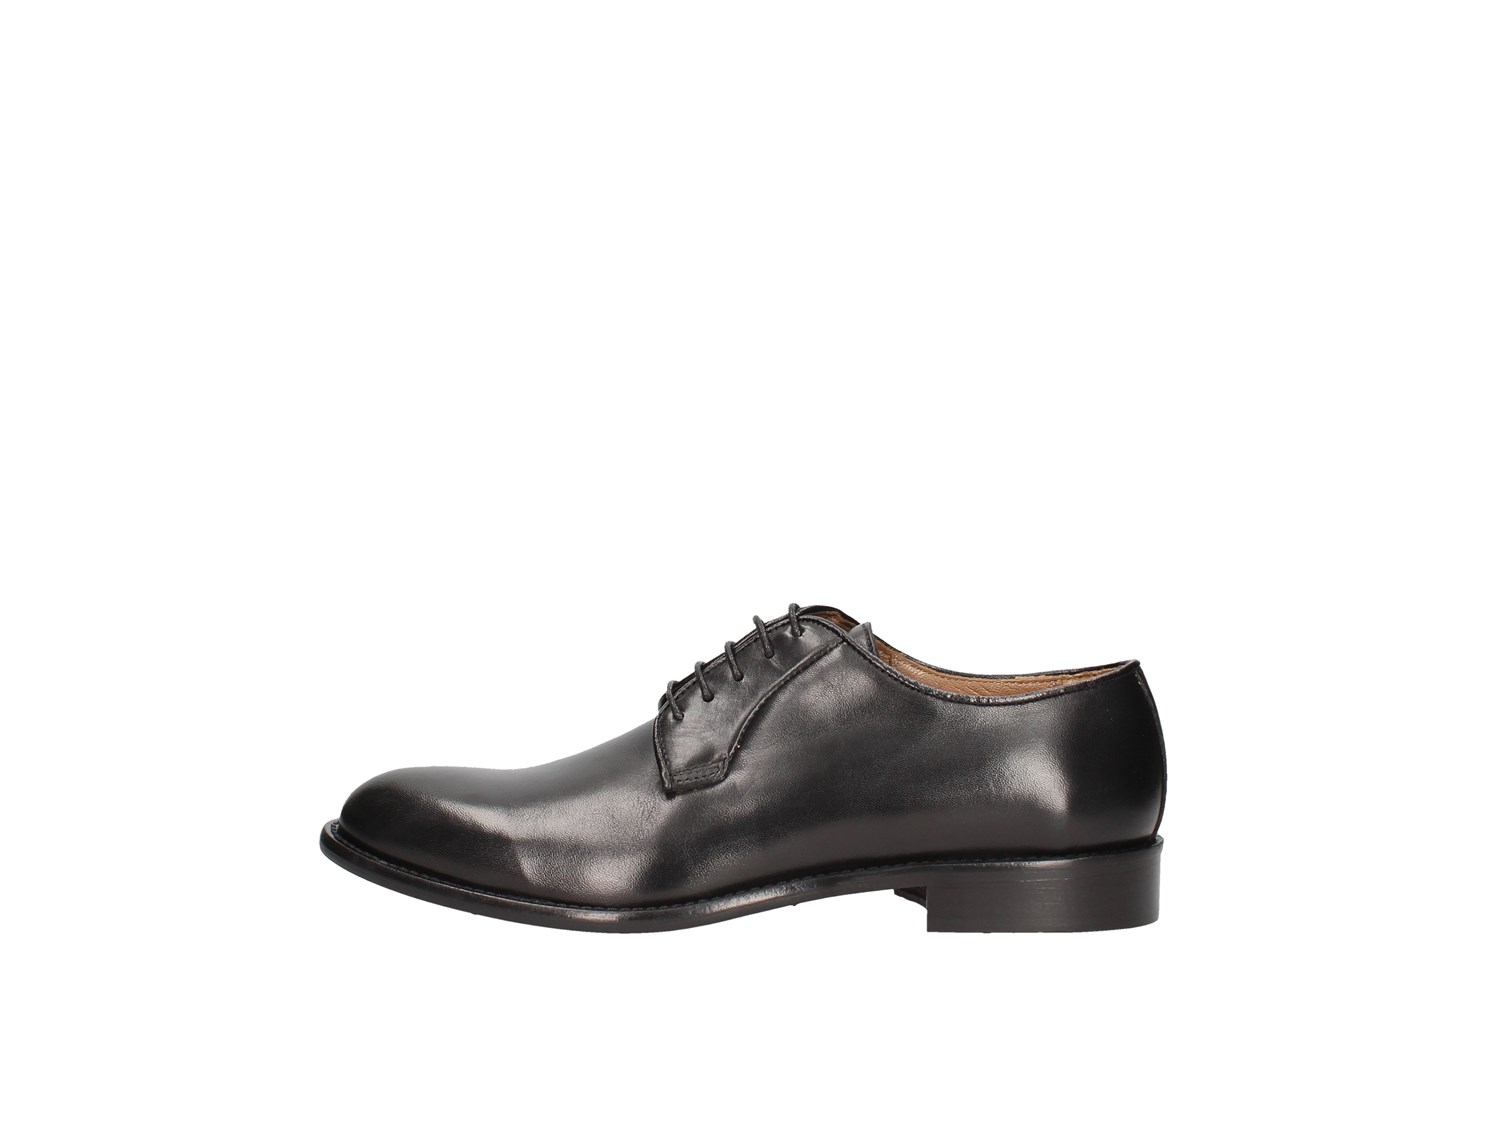 J.b.willis 1019-5 Black Shoes Man Francesina